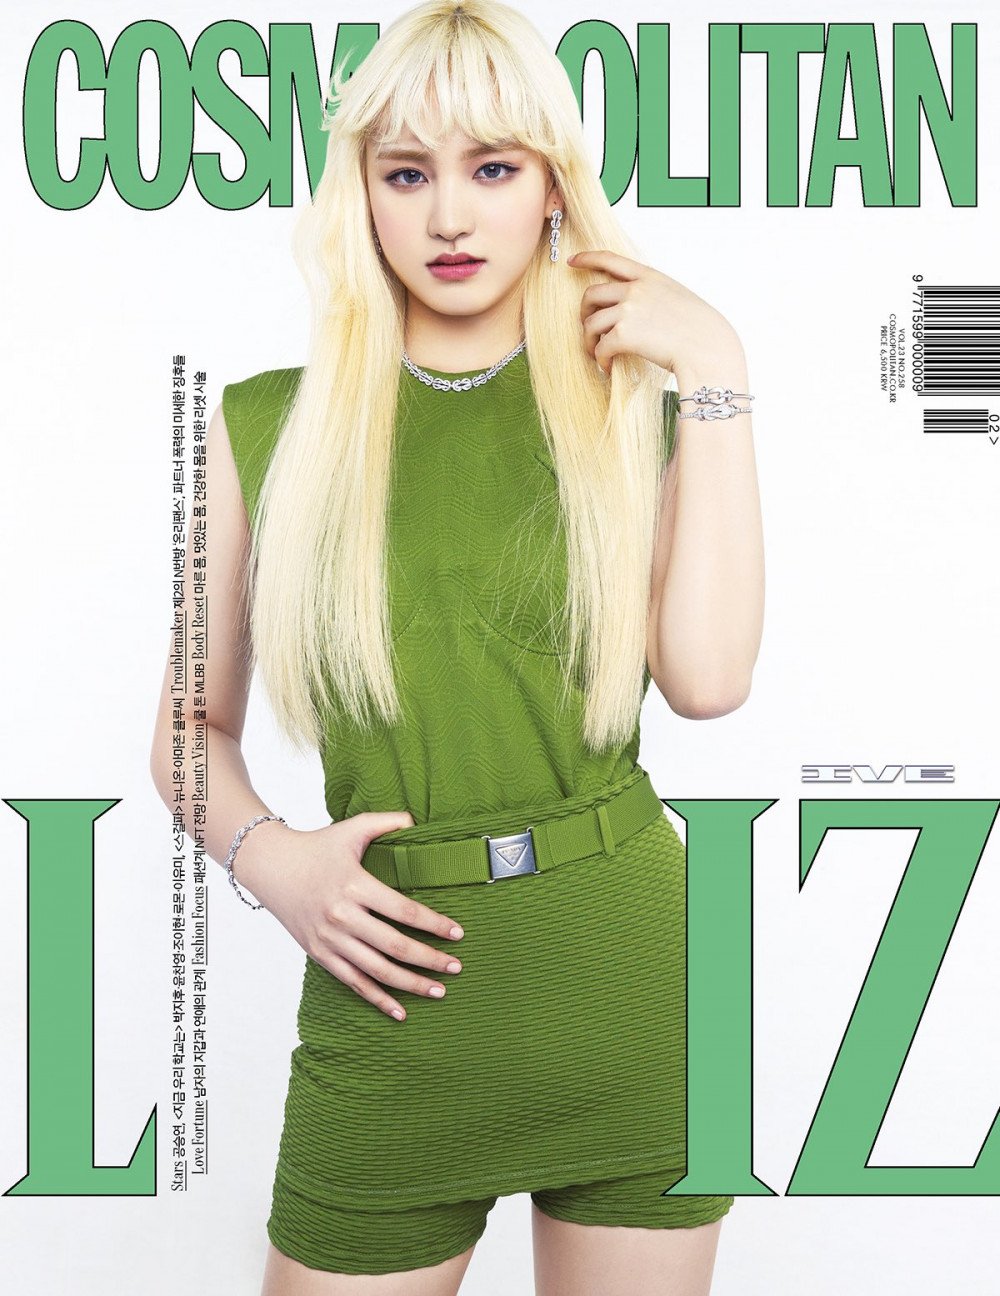 IVE chễm chệ trên trang bìa Cosmopolitan dù mới debut 2 tháng nhưng chụp thế nào mà bị nhận xét trông như bìa Hoa Học Trò? - Ảnh 4.